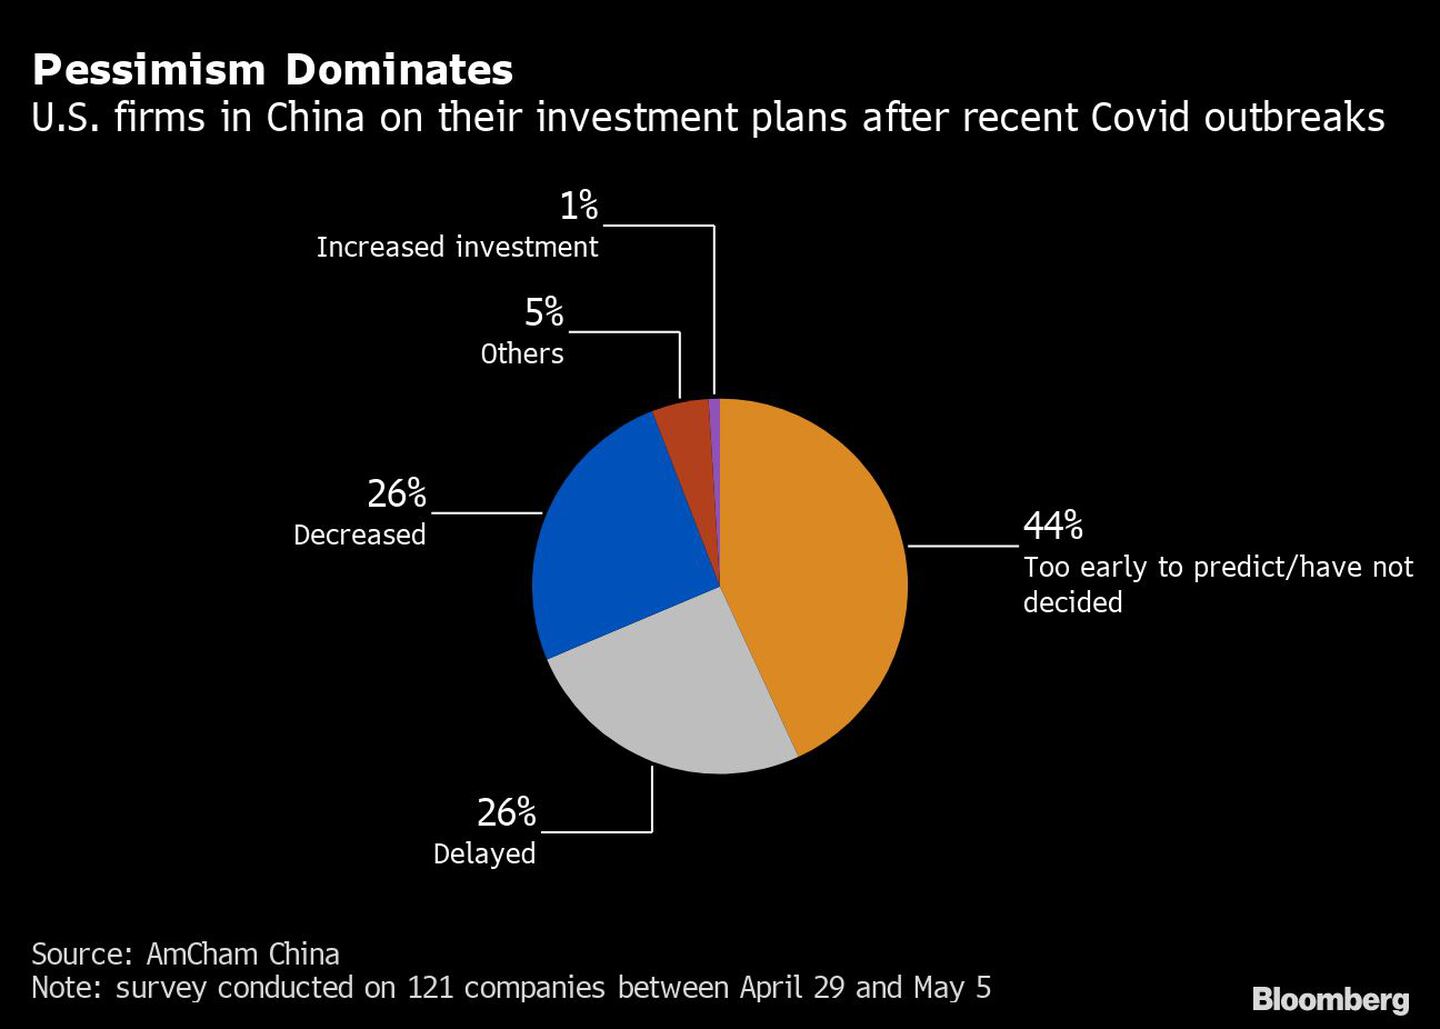 Las empresas estadounidenses en China sobre sus planes de inversión tras los recientes brotes de Covid-19dfd